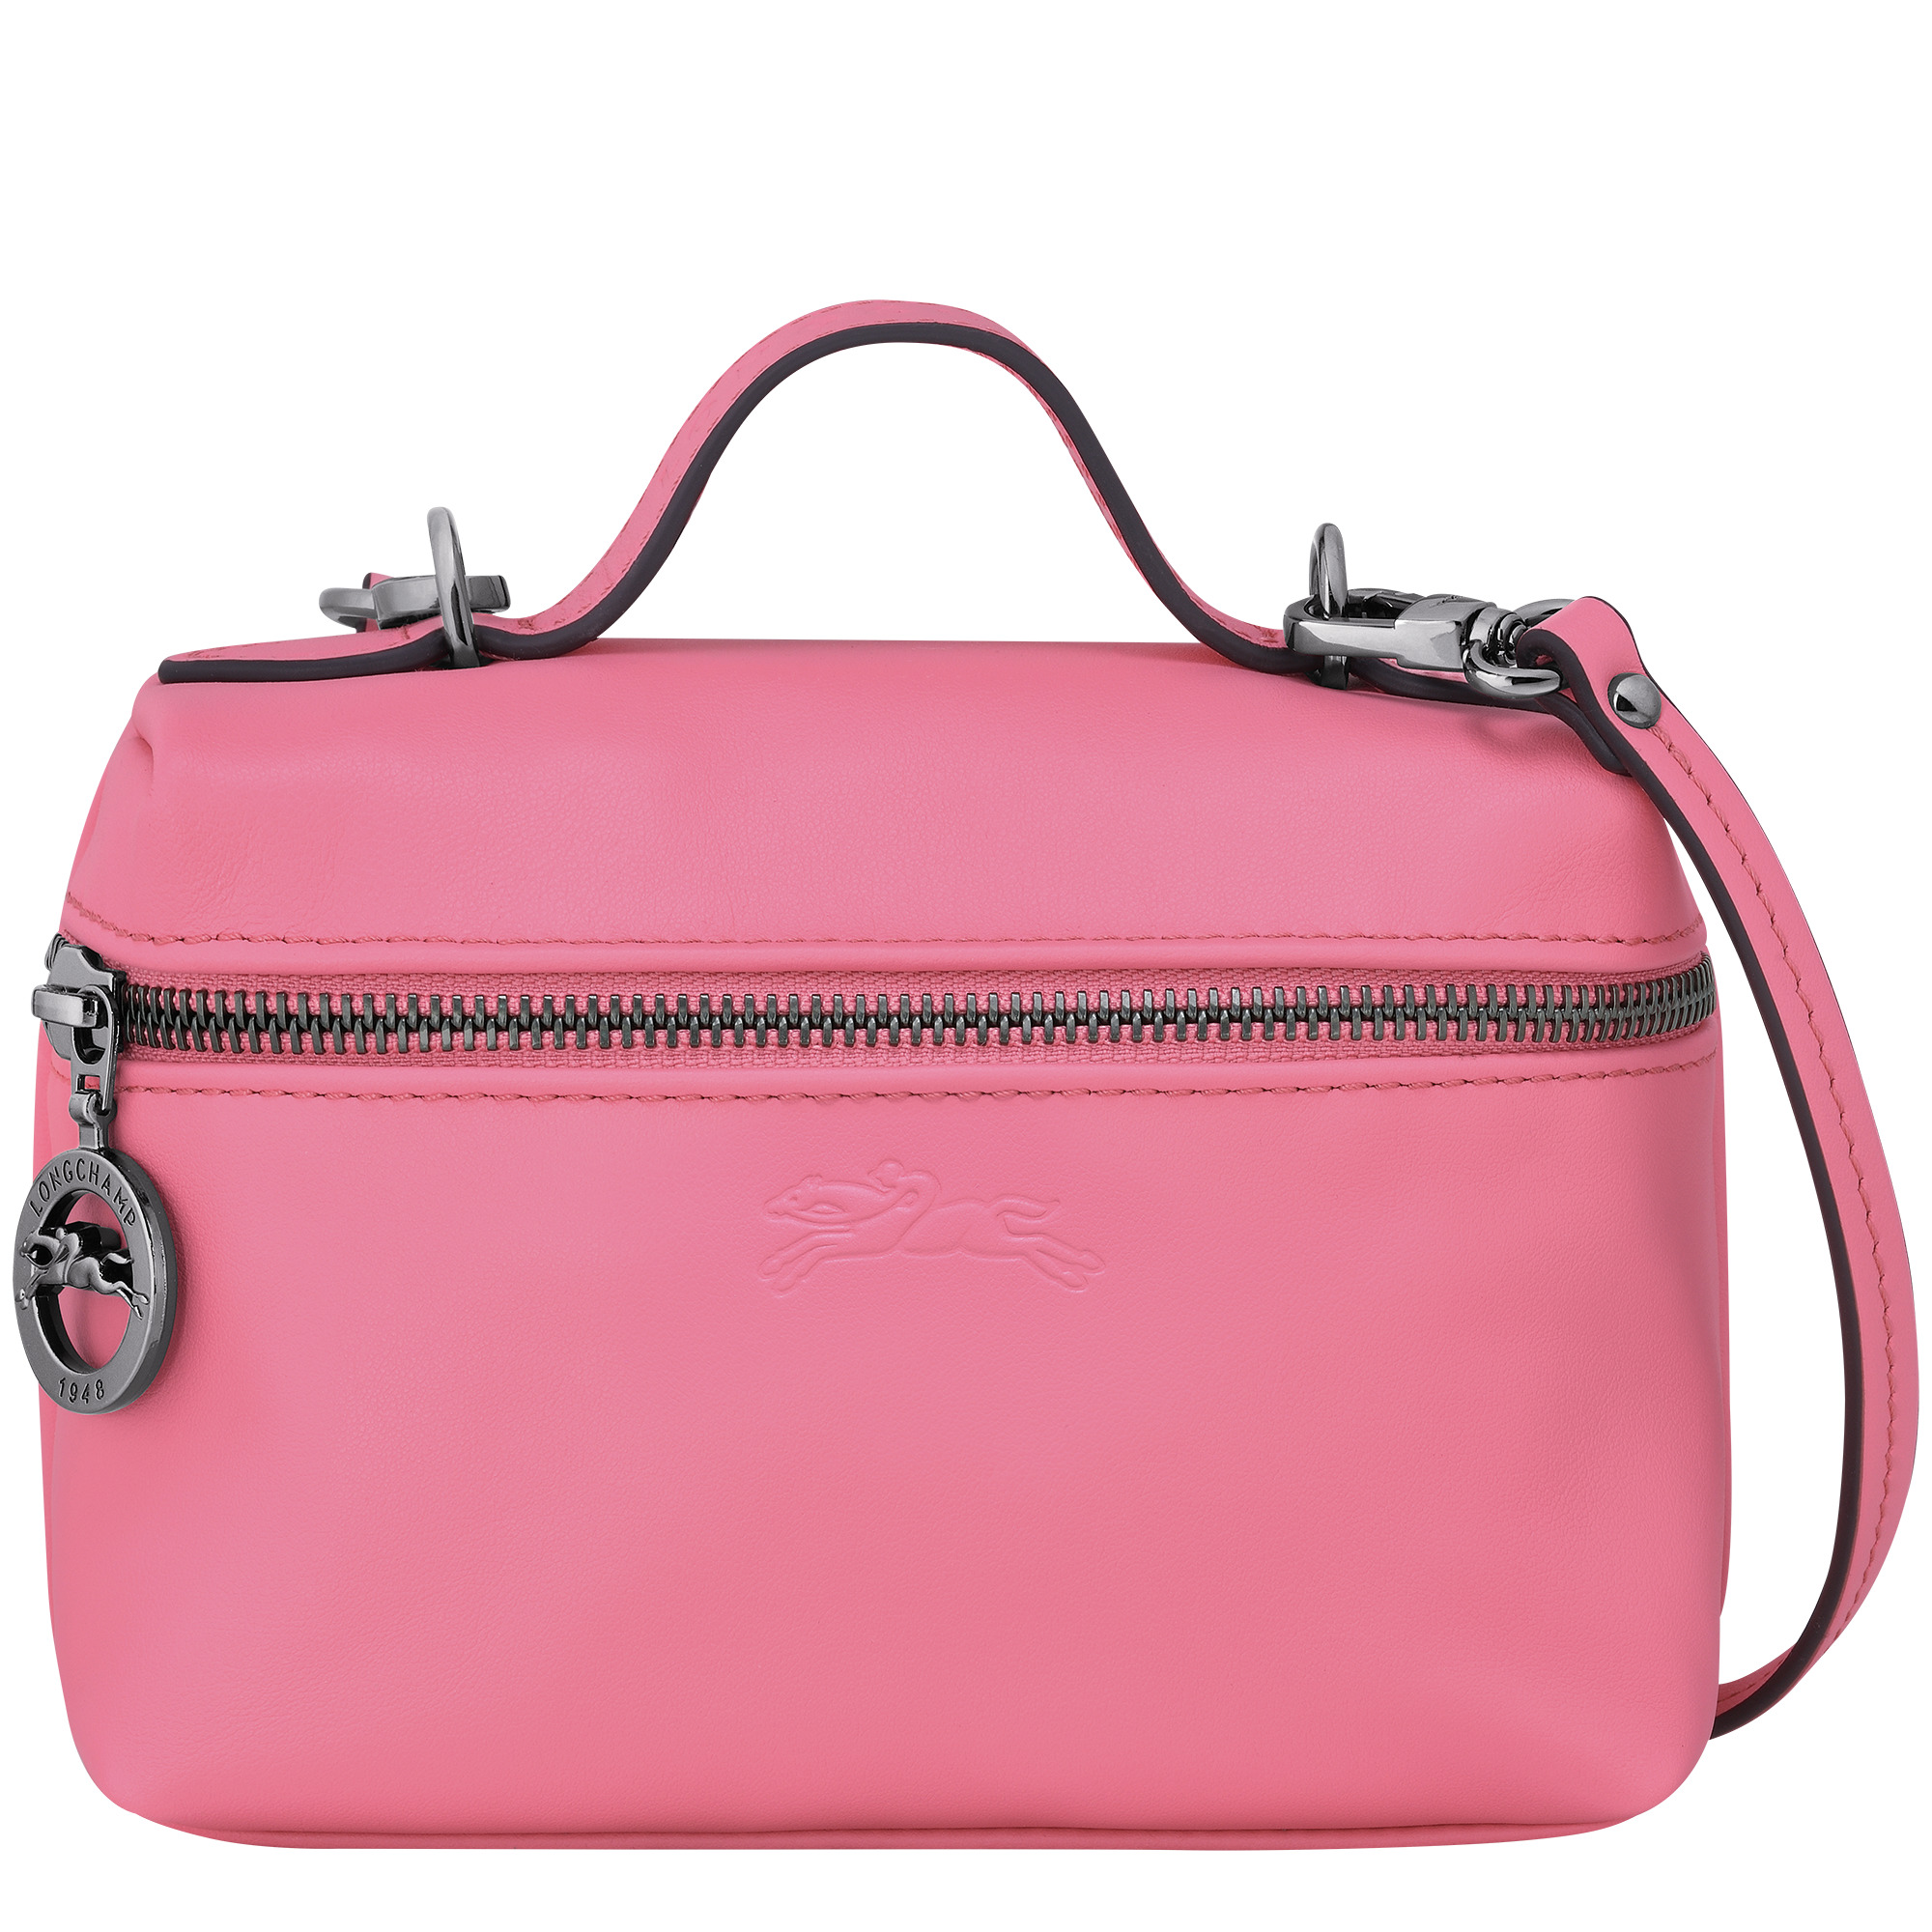 Longchamp, Bags, Longchamp Le Pliage Red Cosmetics Case